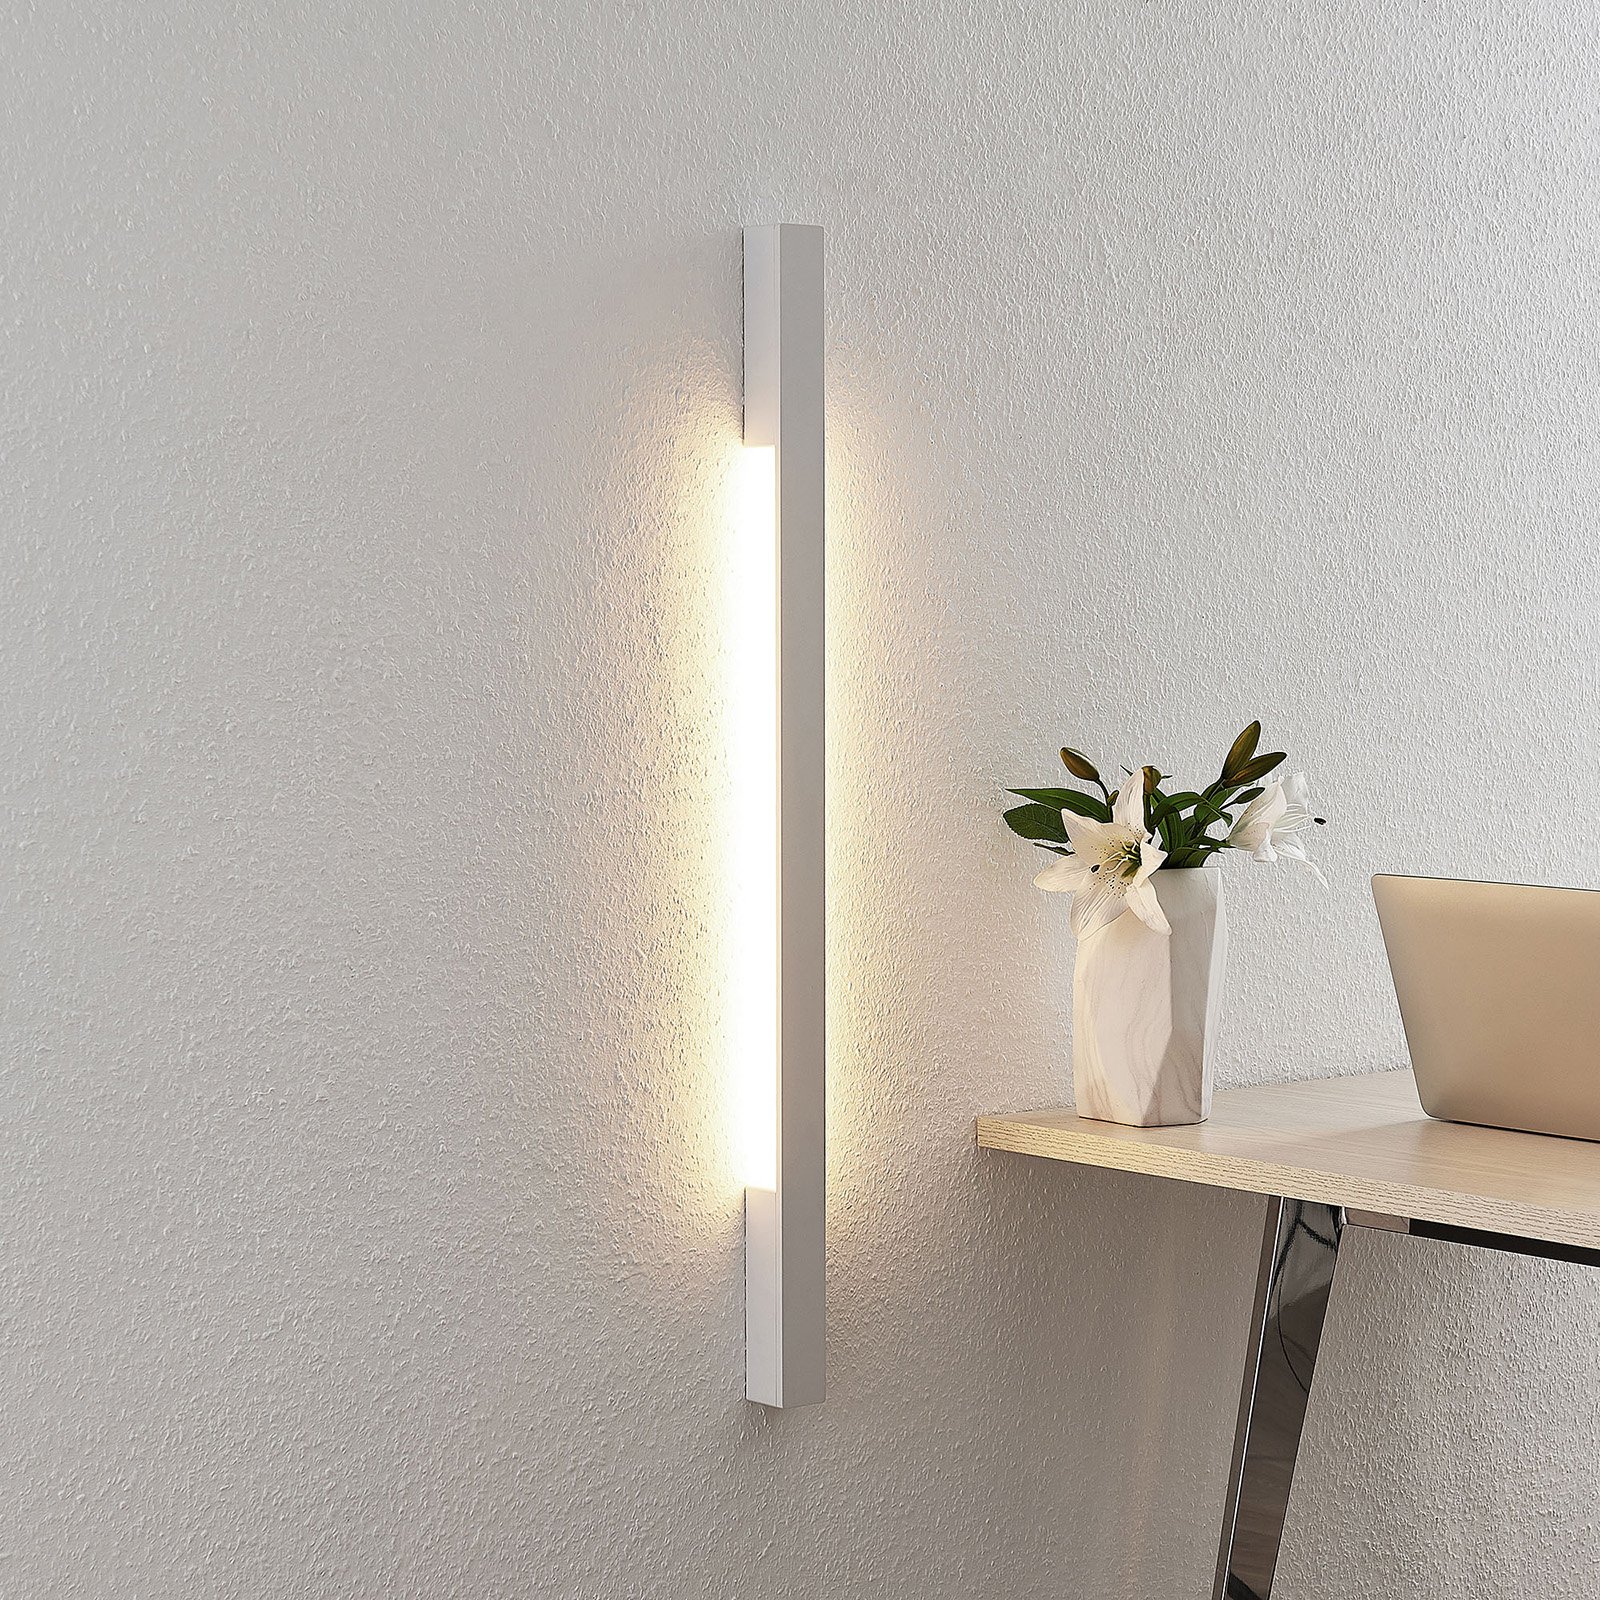 Arcchio Ivano LED nástěnné světlo, 91 cm, bílé